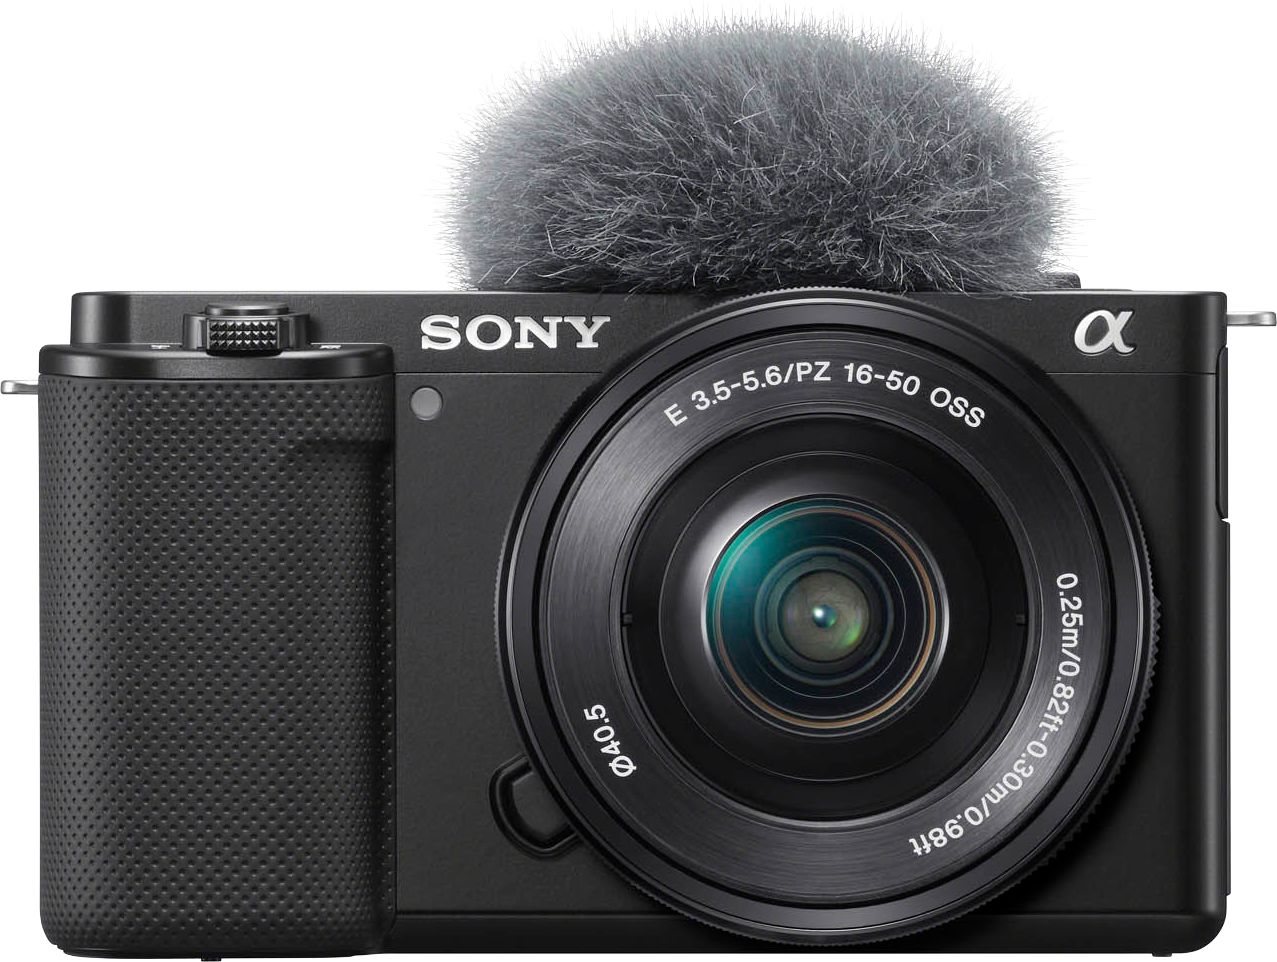 Sony dévoile le nouvel appareil photo ZV-E1 pour blogueurs vidéo - Blogue  Best Buy